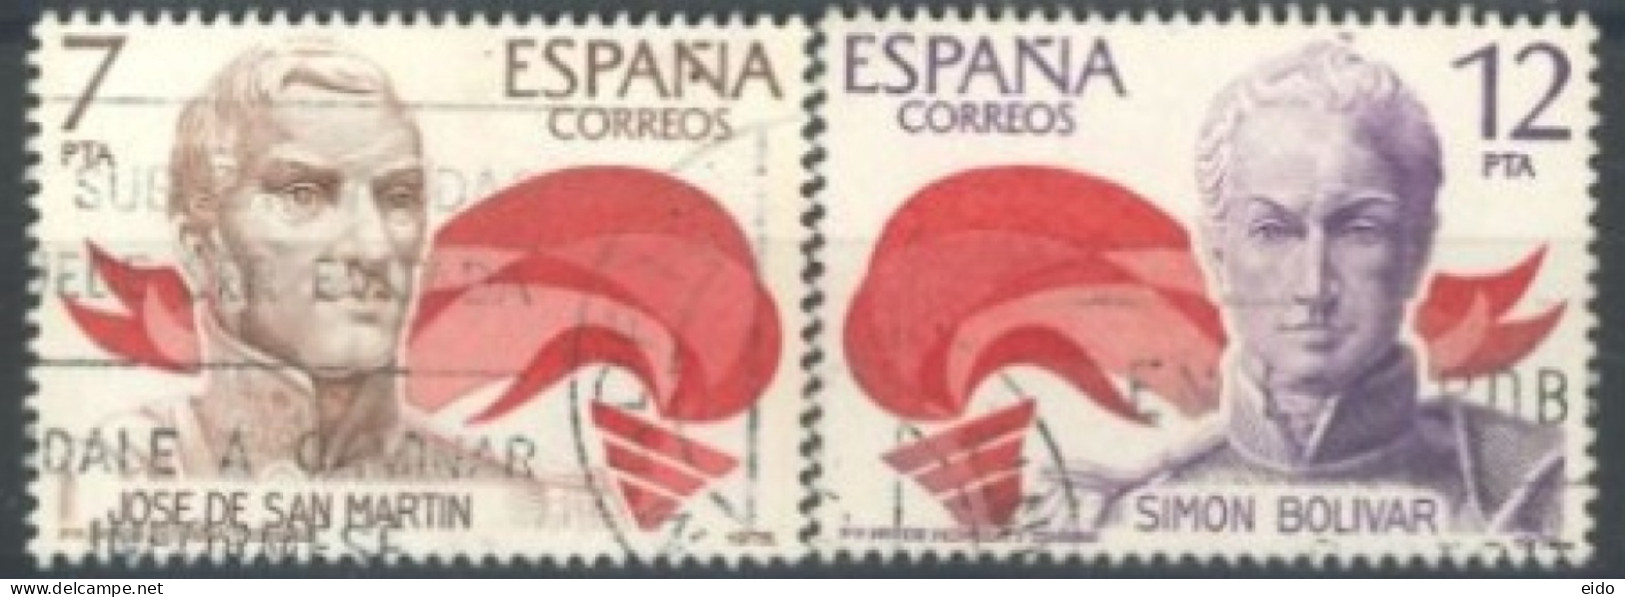 SPAIN, 1978, JOSE DE SAN MARTIN & SIMON BOLIVAR STAMPS COMPLETE SET OF 2, # 2116/17, USED. - Oblitérés